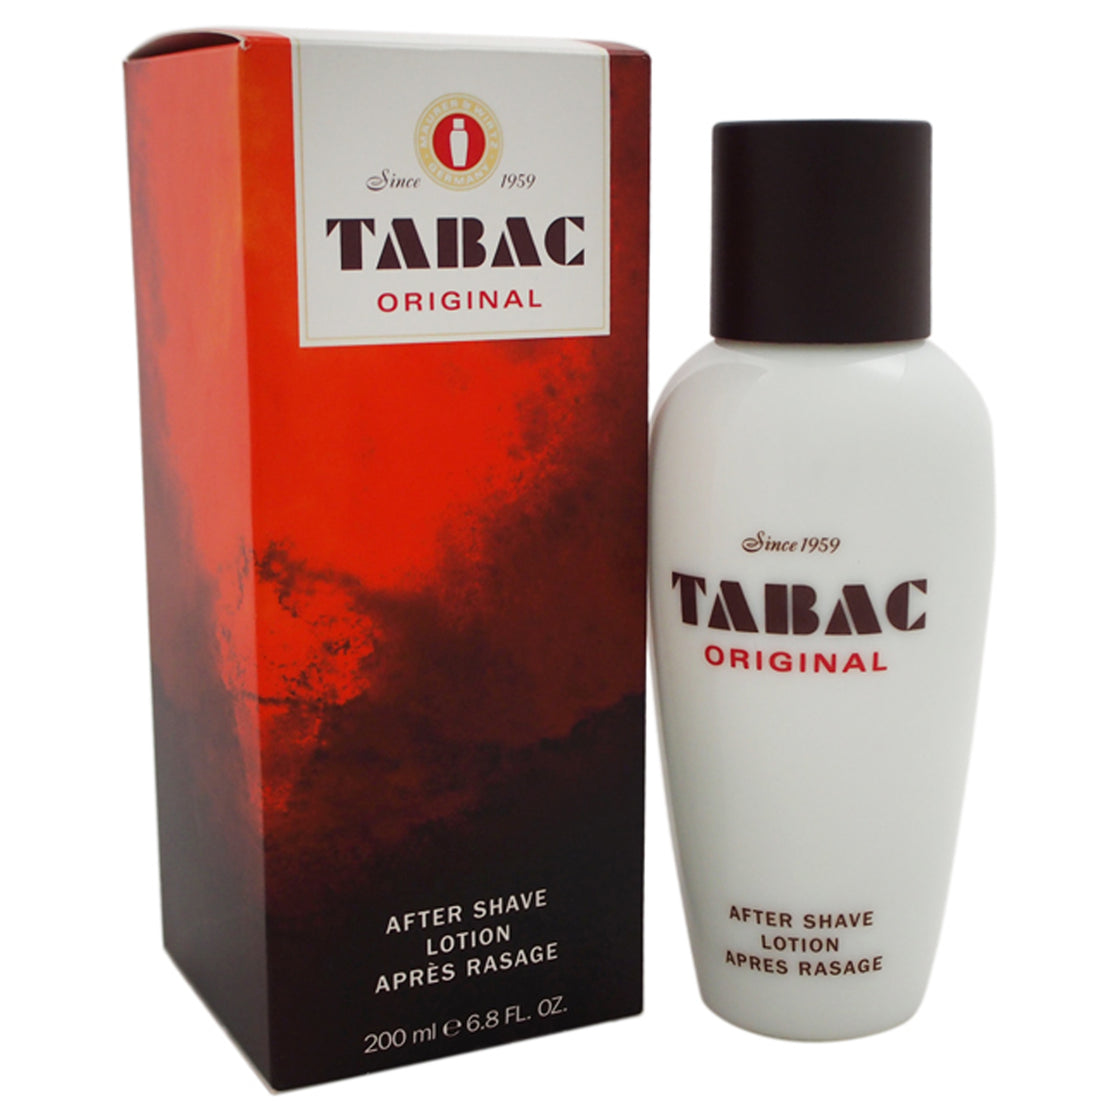 Tabac Original by Maurer & Wirtz for Men - 6.8 oz After Shave Lotion